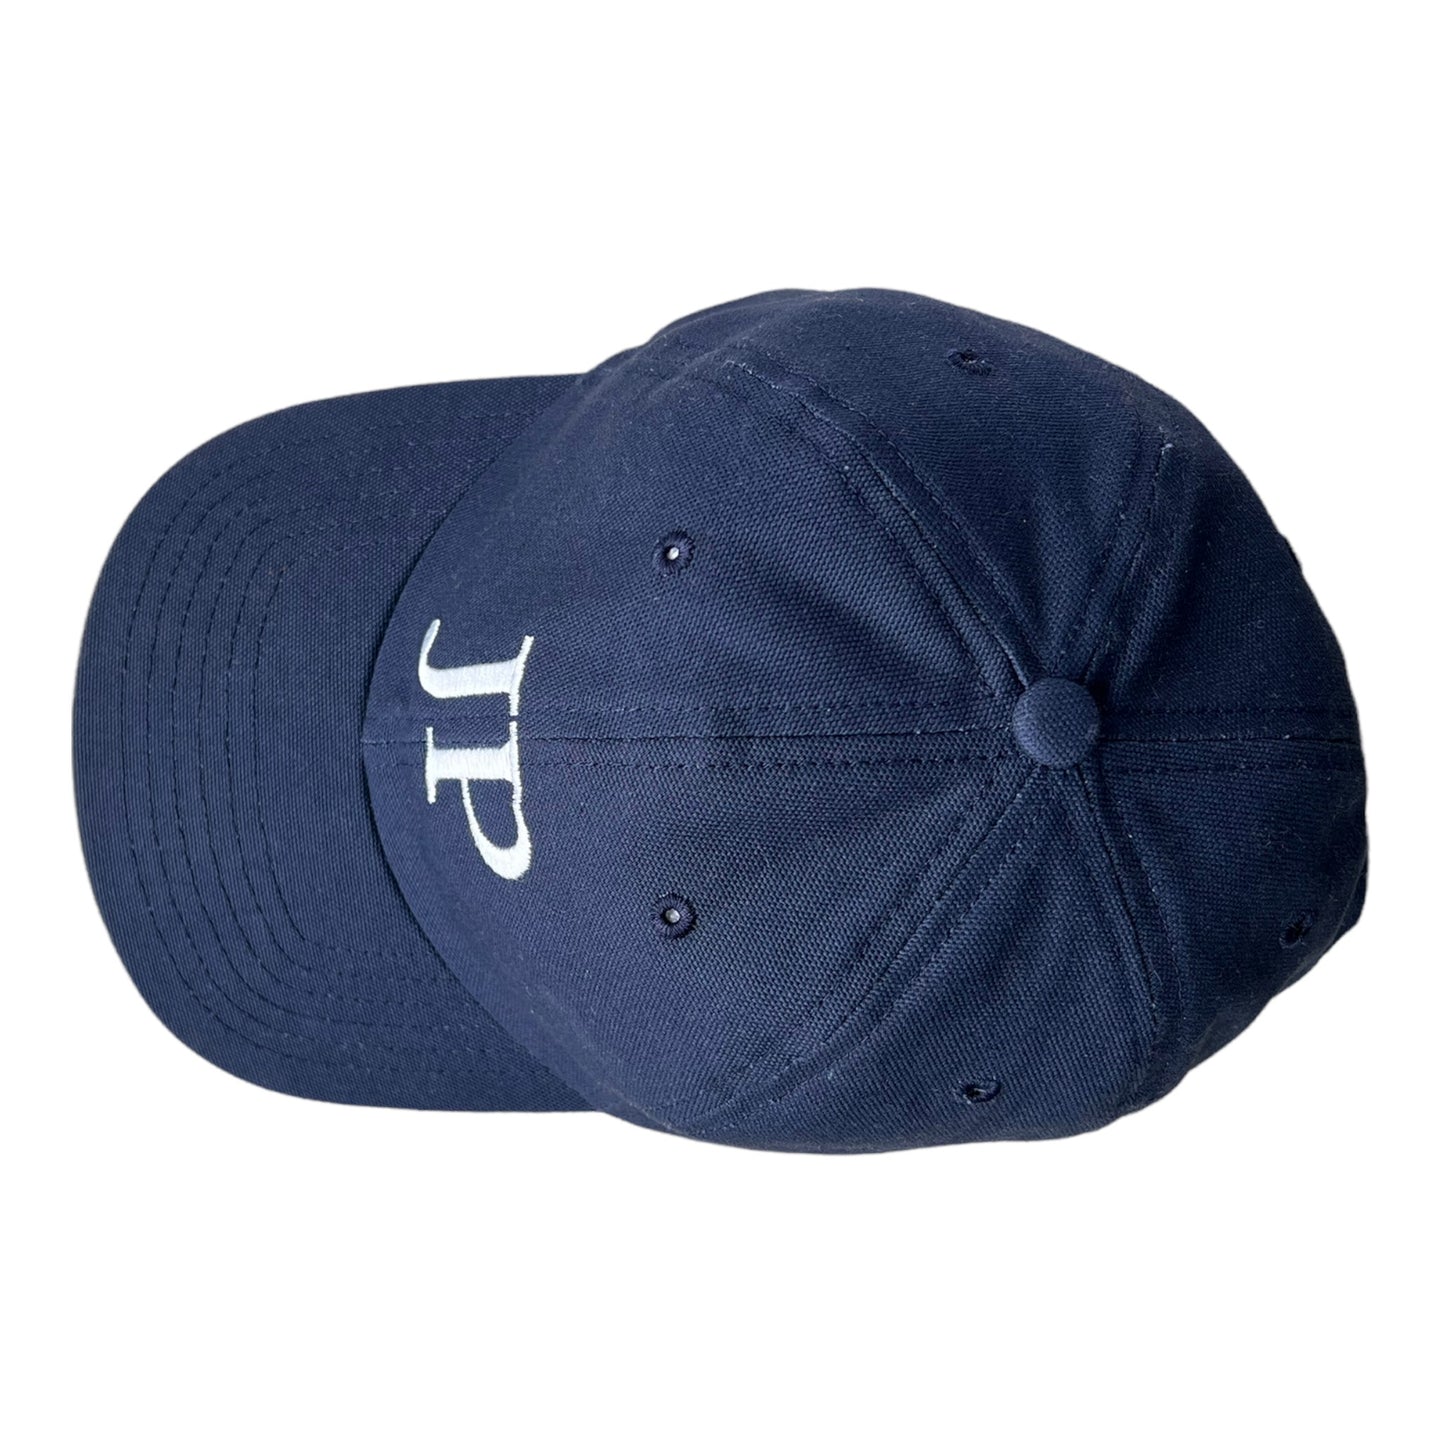 Navy JP Jack Proper Dad Hat